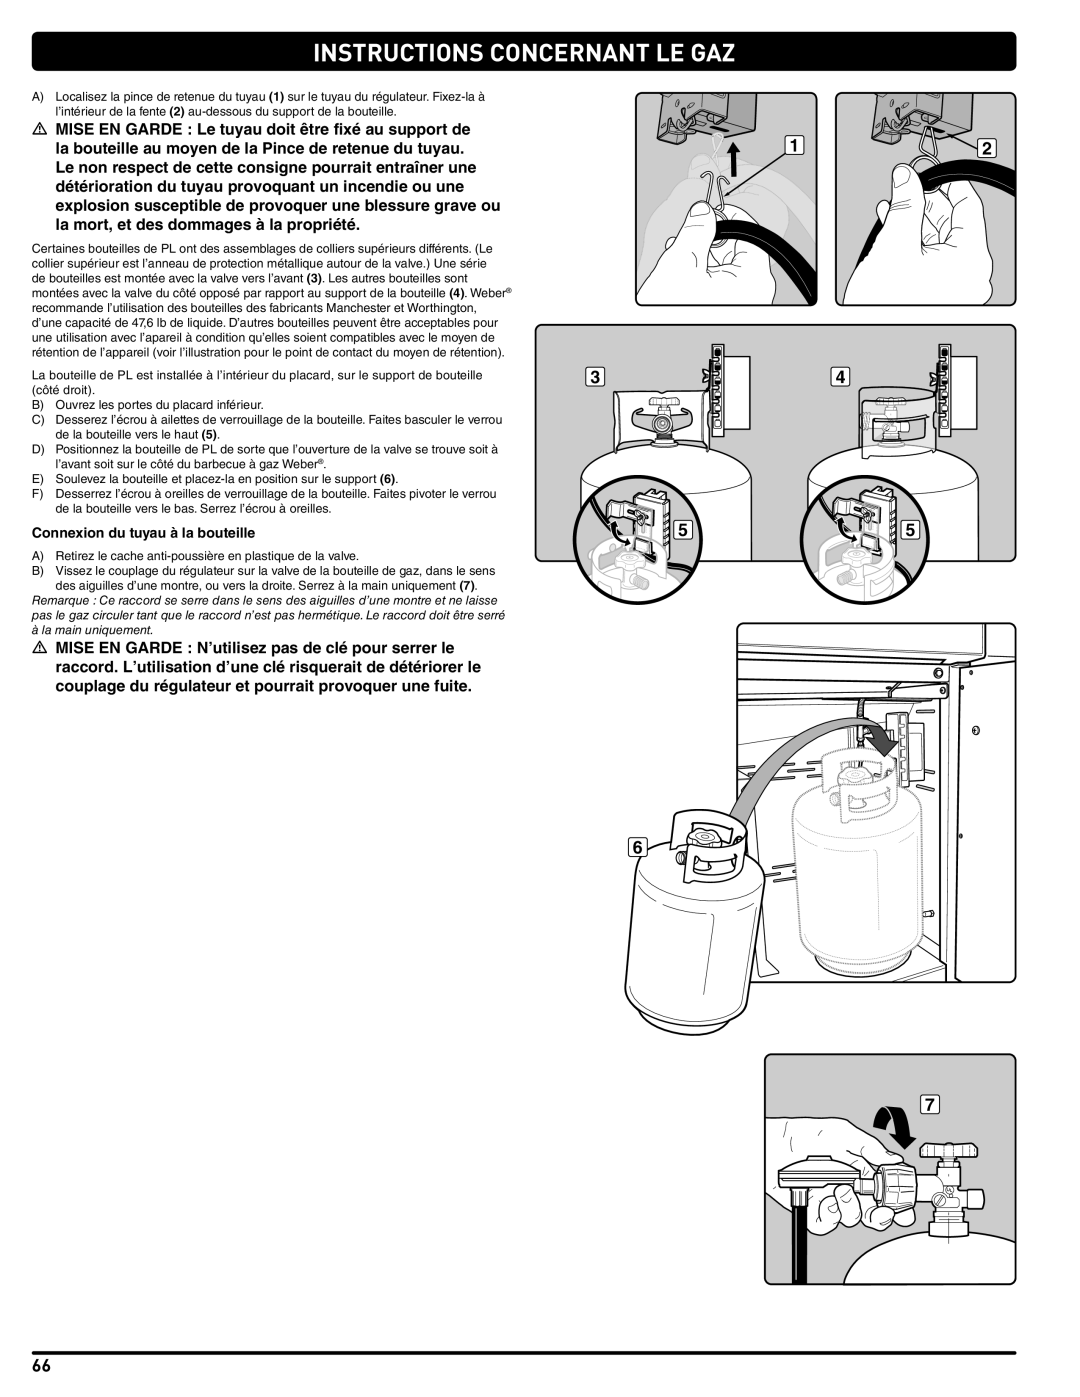 Summit 56214 manual Instructions Concernant Le Gaz, Connexion du tuyau à la bouteille 